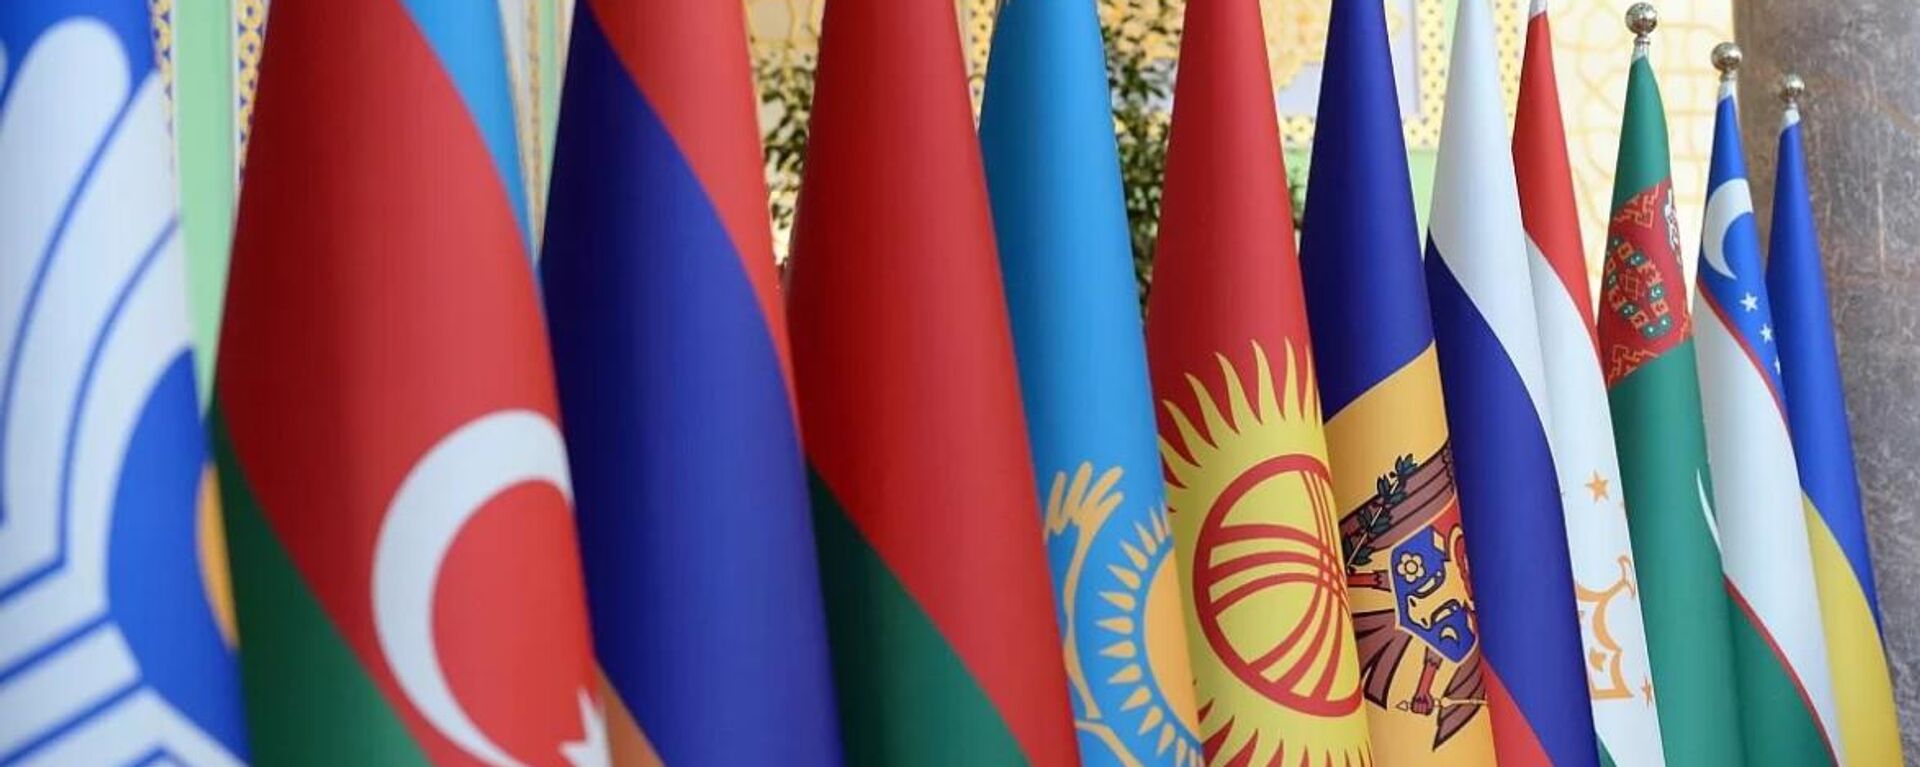 Флаги стран СНГ - Sputnik Узбекистан, 1920, 12.04.2021